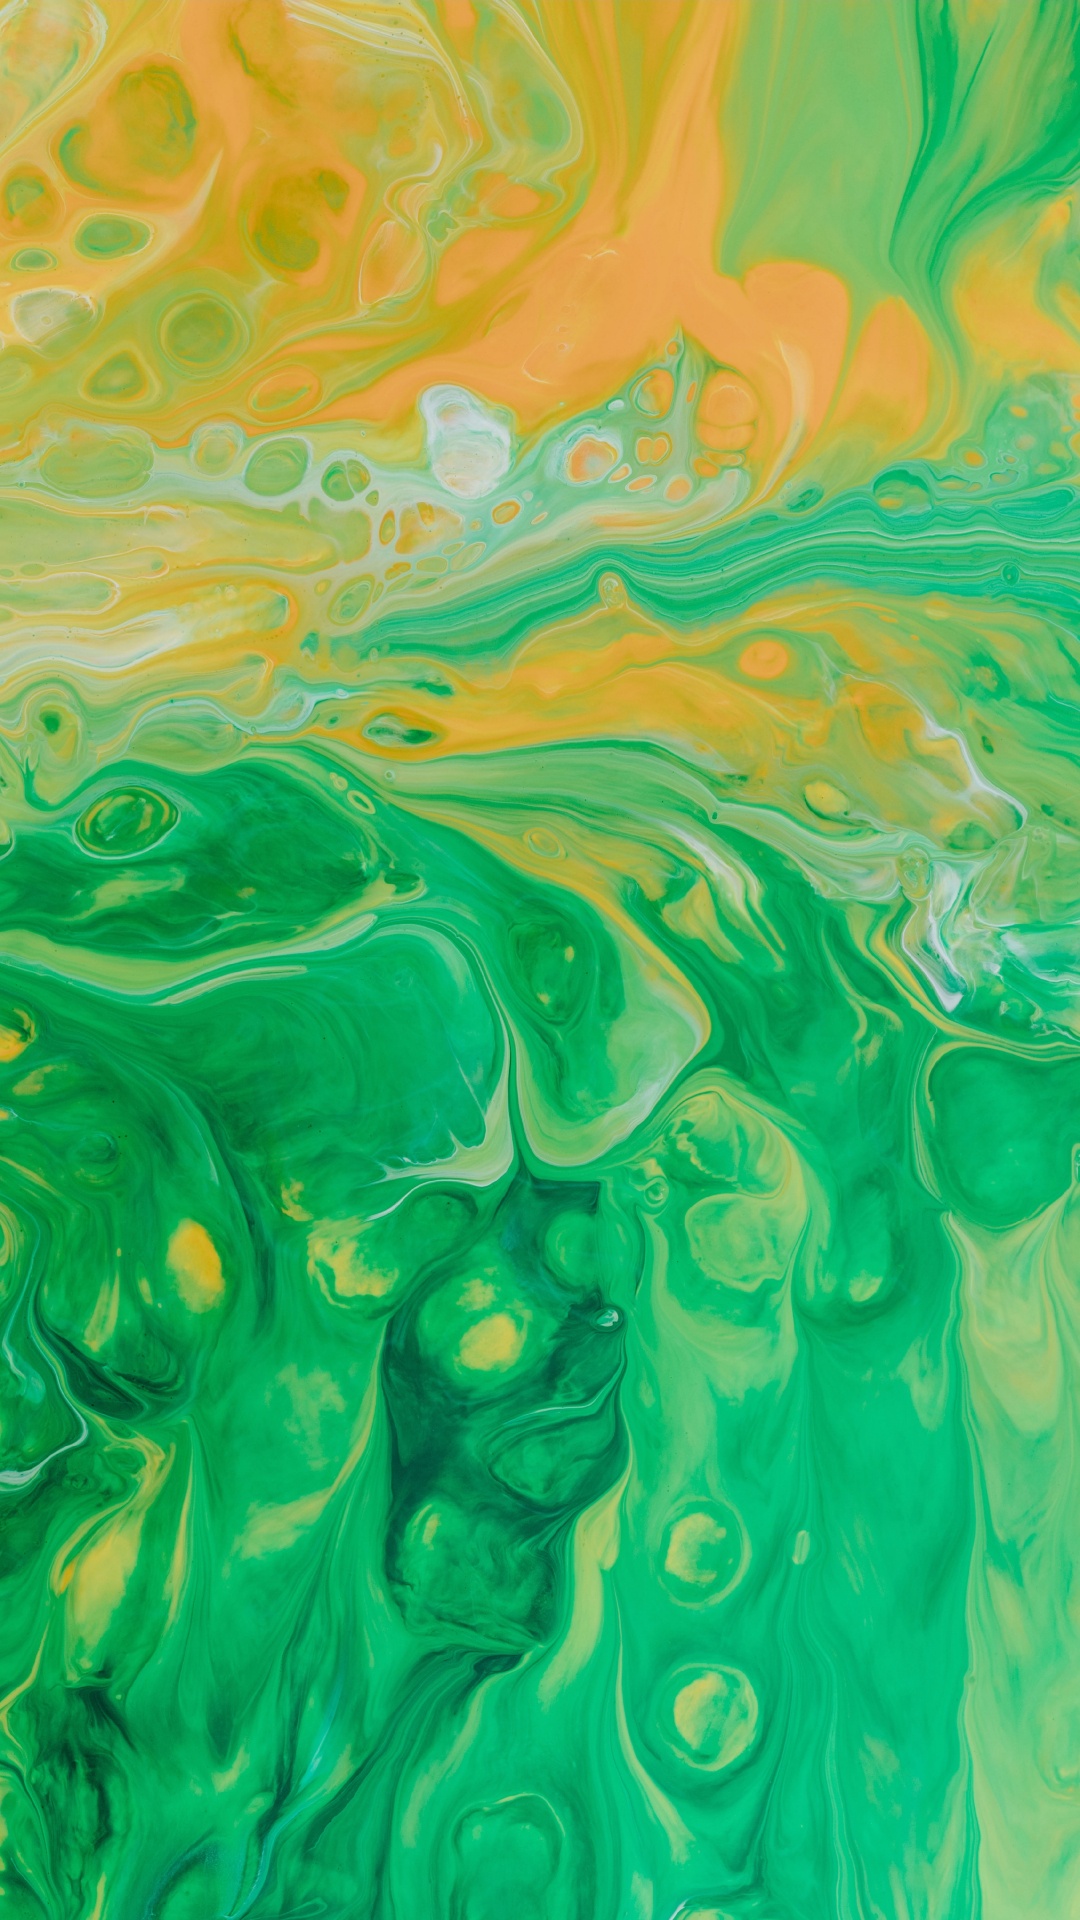 丙烯酸涂料, 水彩画, 绿色的, 艺术, 视觉艺术 壁纸 1080x1920 允许